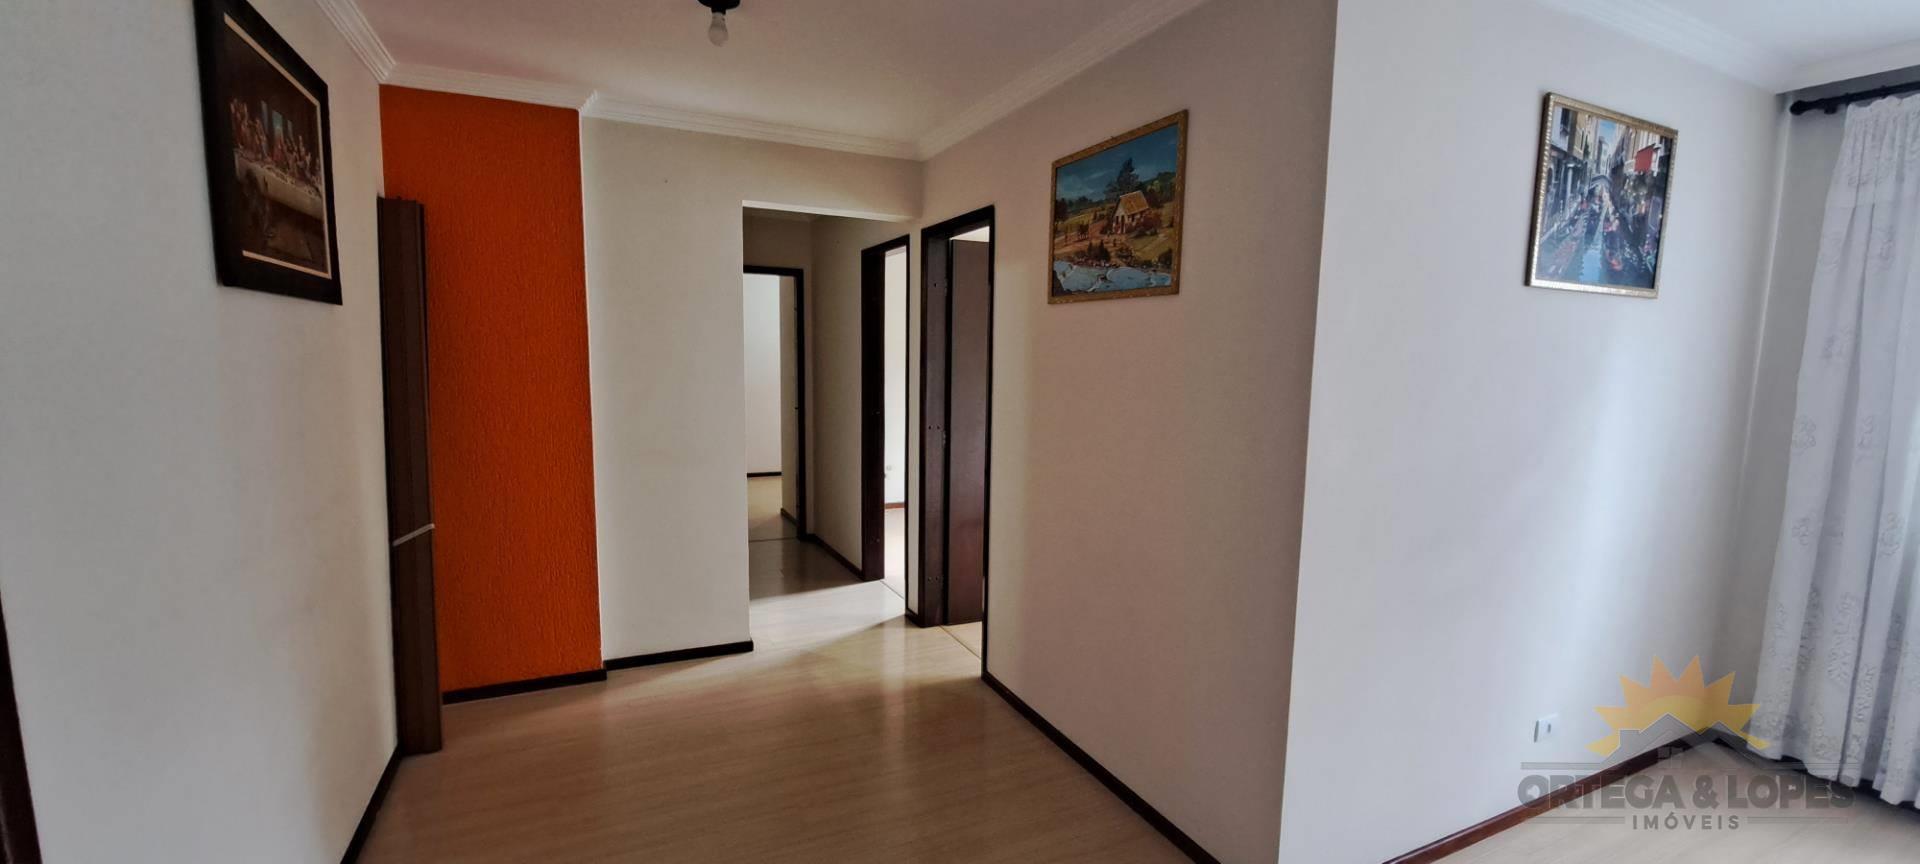 Apartamento para venda no Novo Mundo em Curitiba com 61m² por R$ 255.000,00